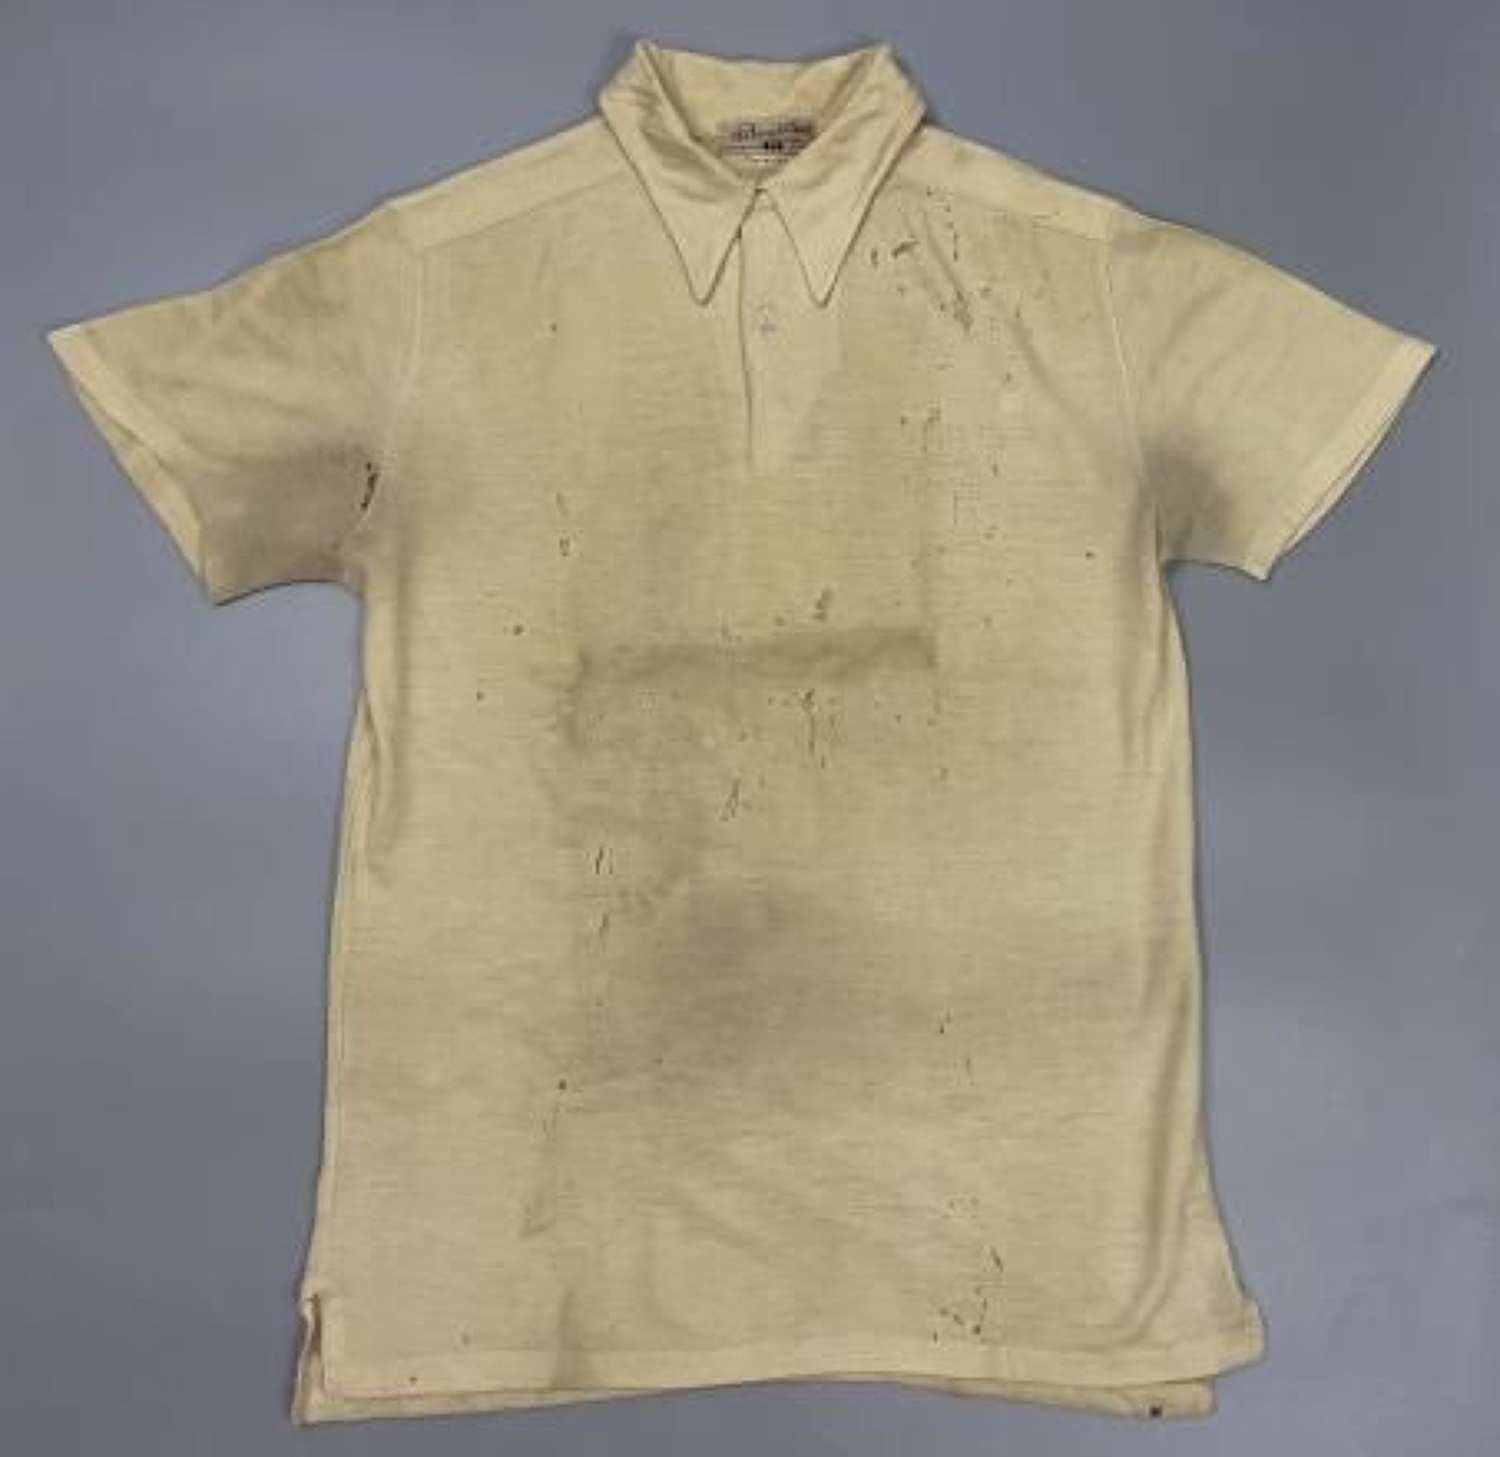 Rare original Early 1940s Men's Polo Shirt by 'R. W. Forsyth'